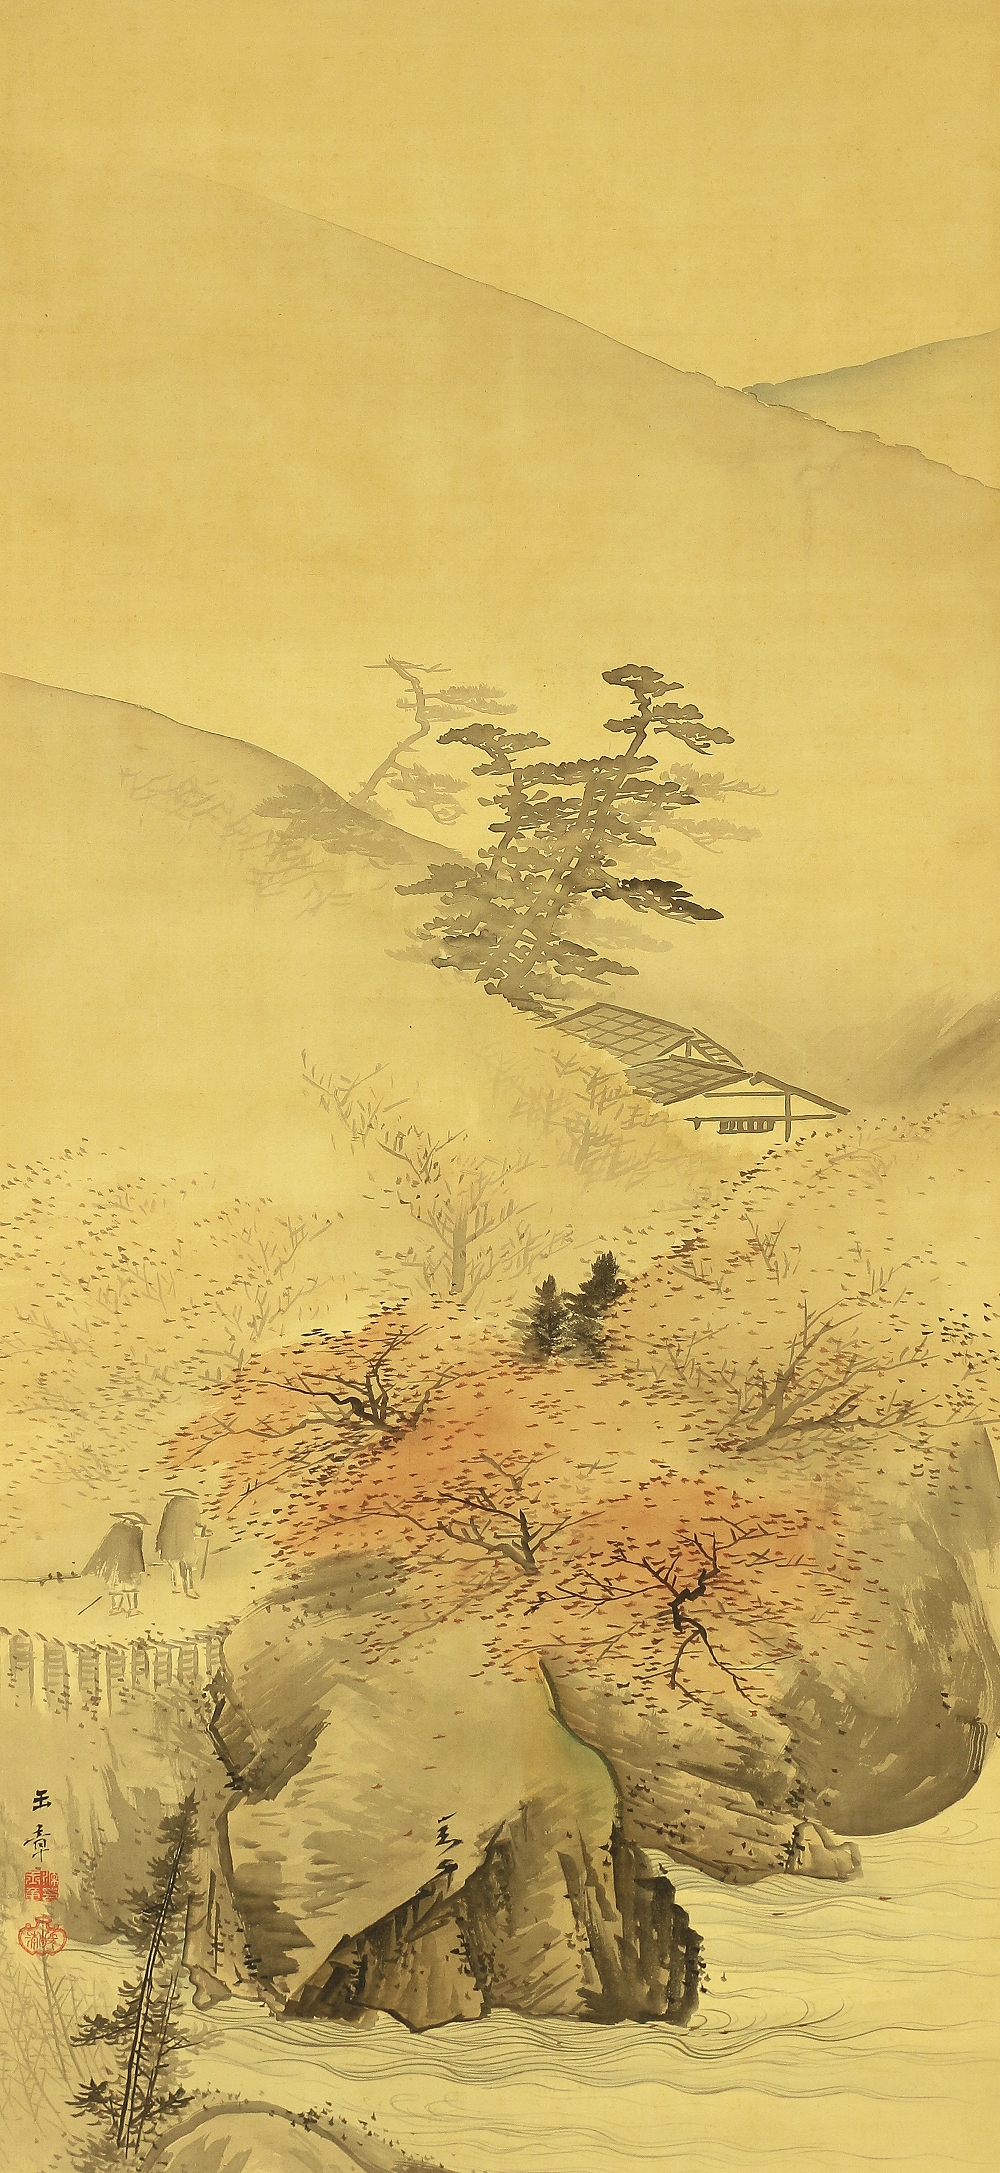 川端玉章 Kawabata Gyokusho (1842-1913) Japanese antique art kakejiku kakemono  wall hanging scroll / Travellers in Autumn Scenery Sansui Landscape with 